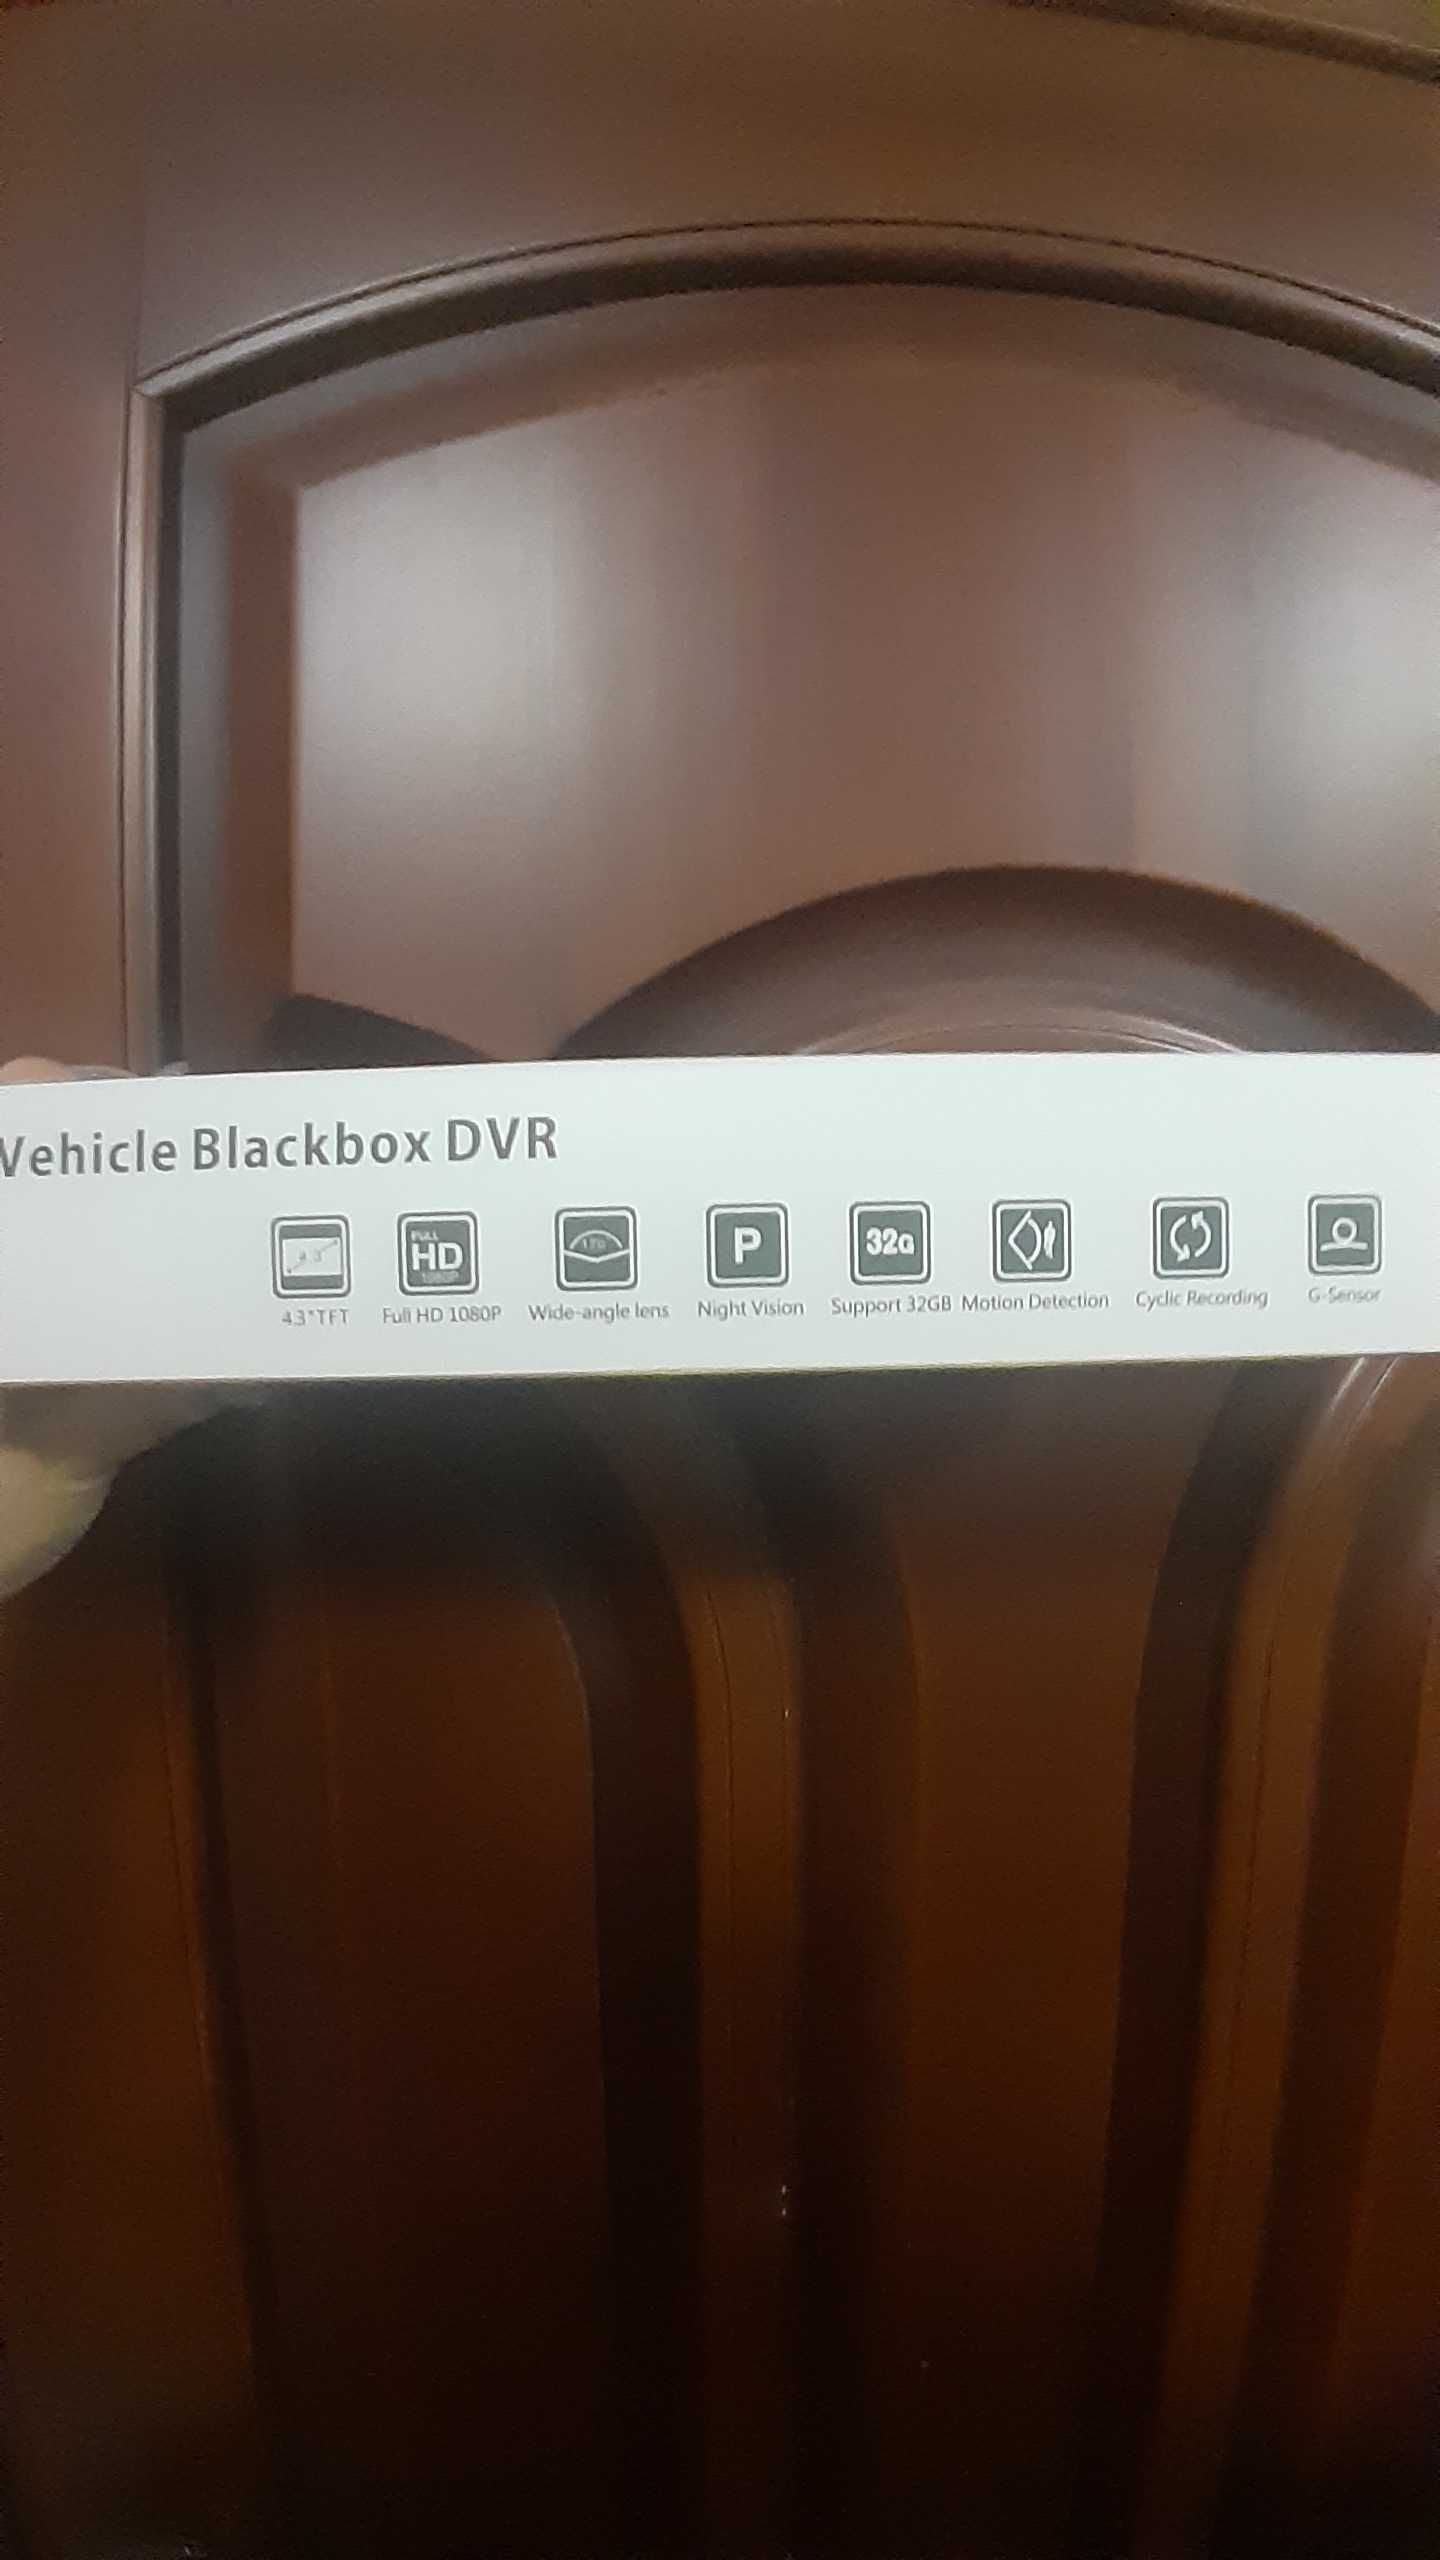 Відеореєстратор Vehicle blackbox DVR. Full HD 1080.Дзеркало з камерою.